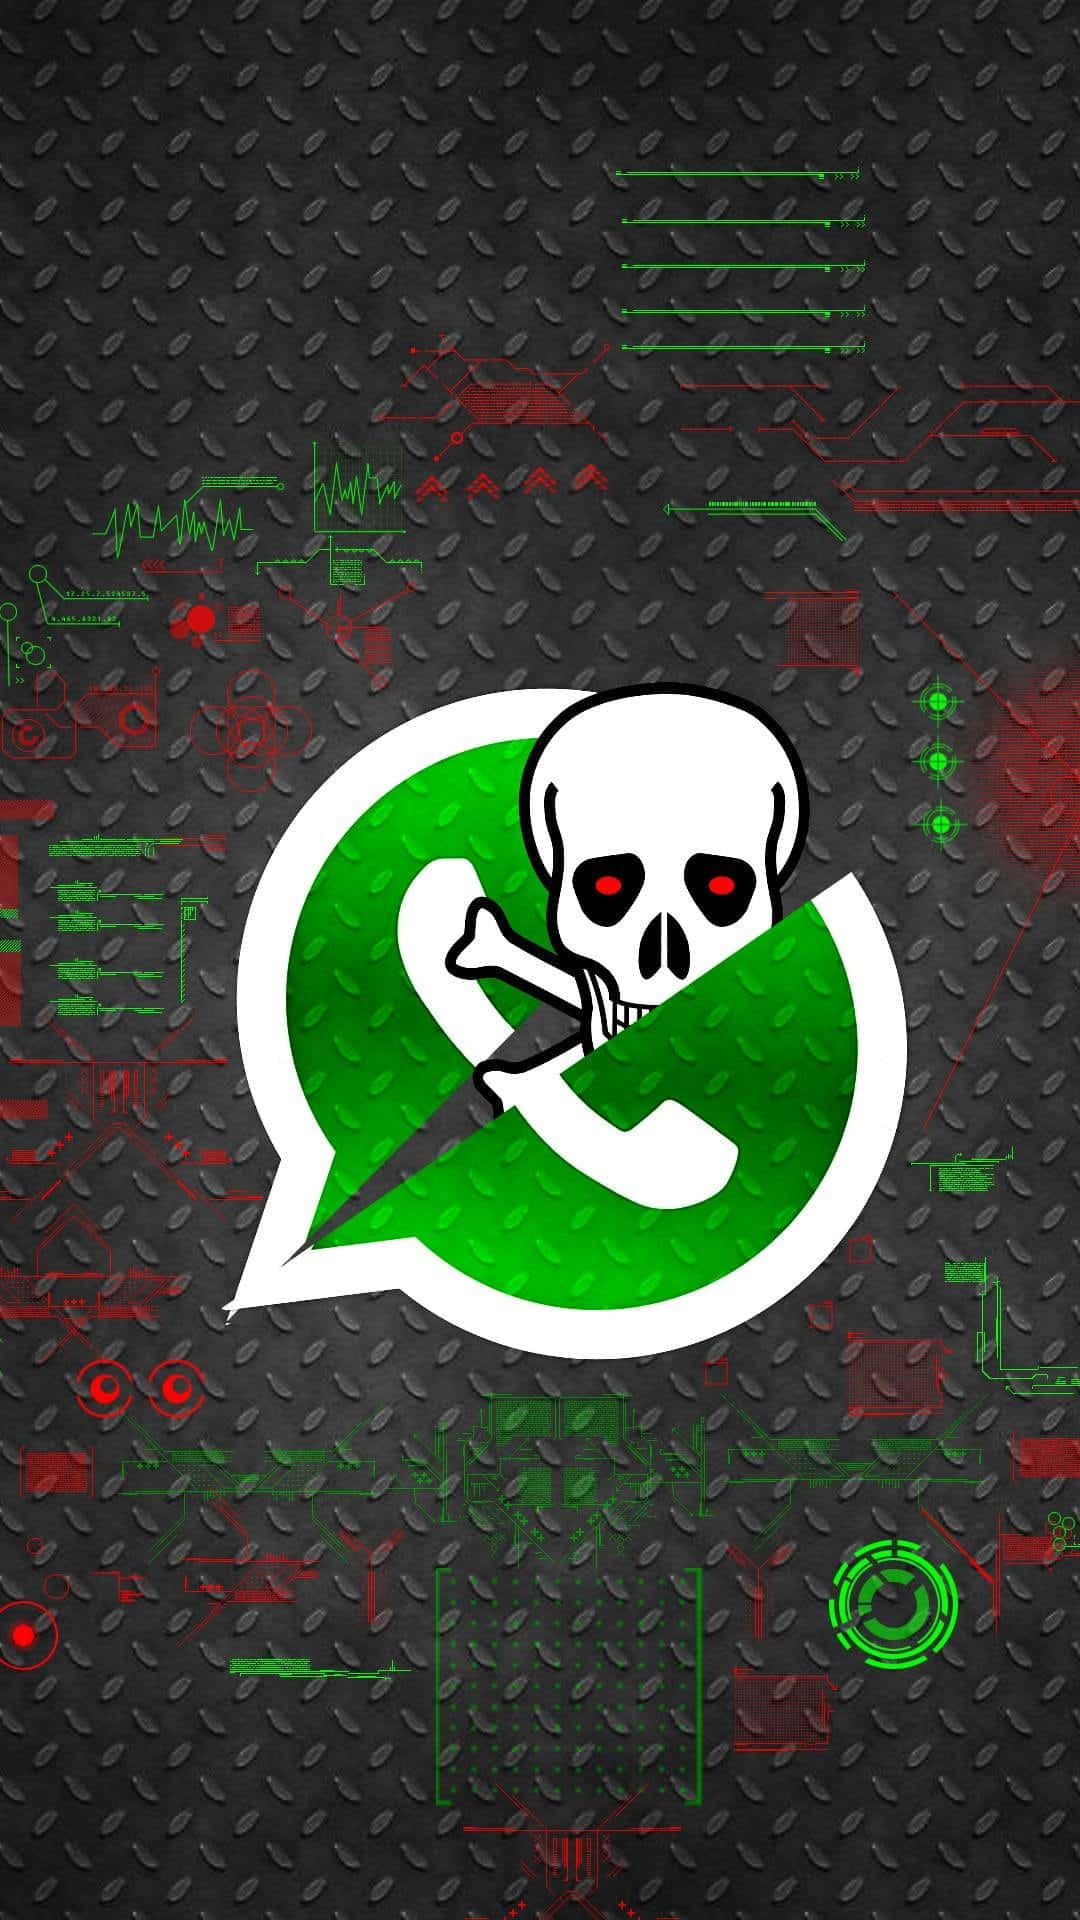 Dalevida A Tus Conversaciones De Whatsapp Con Este Cautivador Fondo De Pantalla.